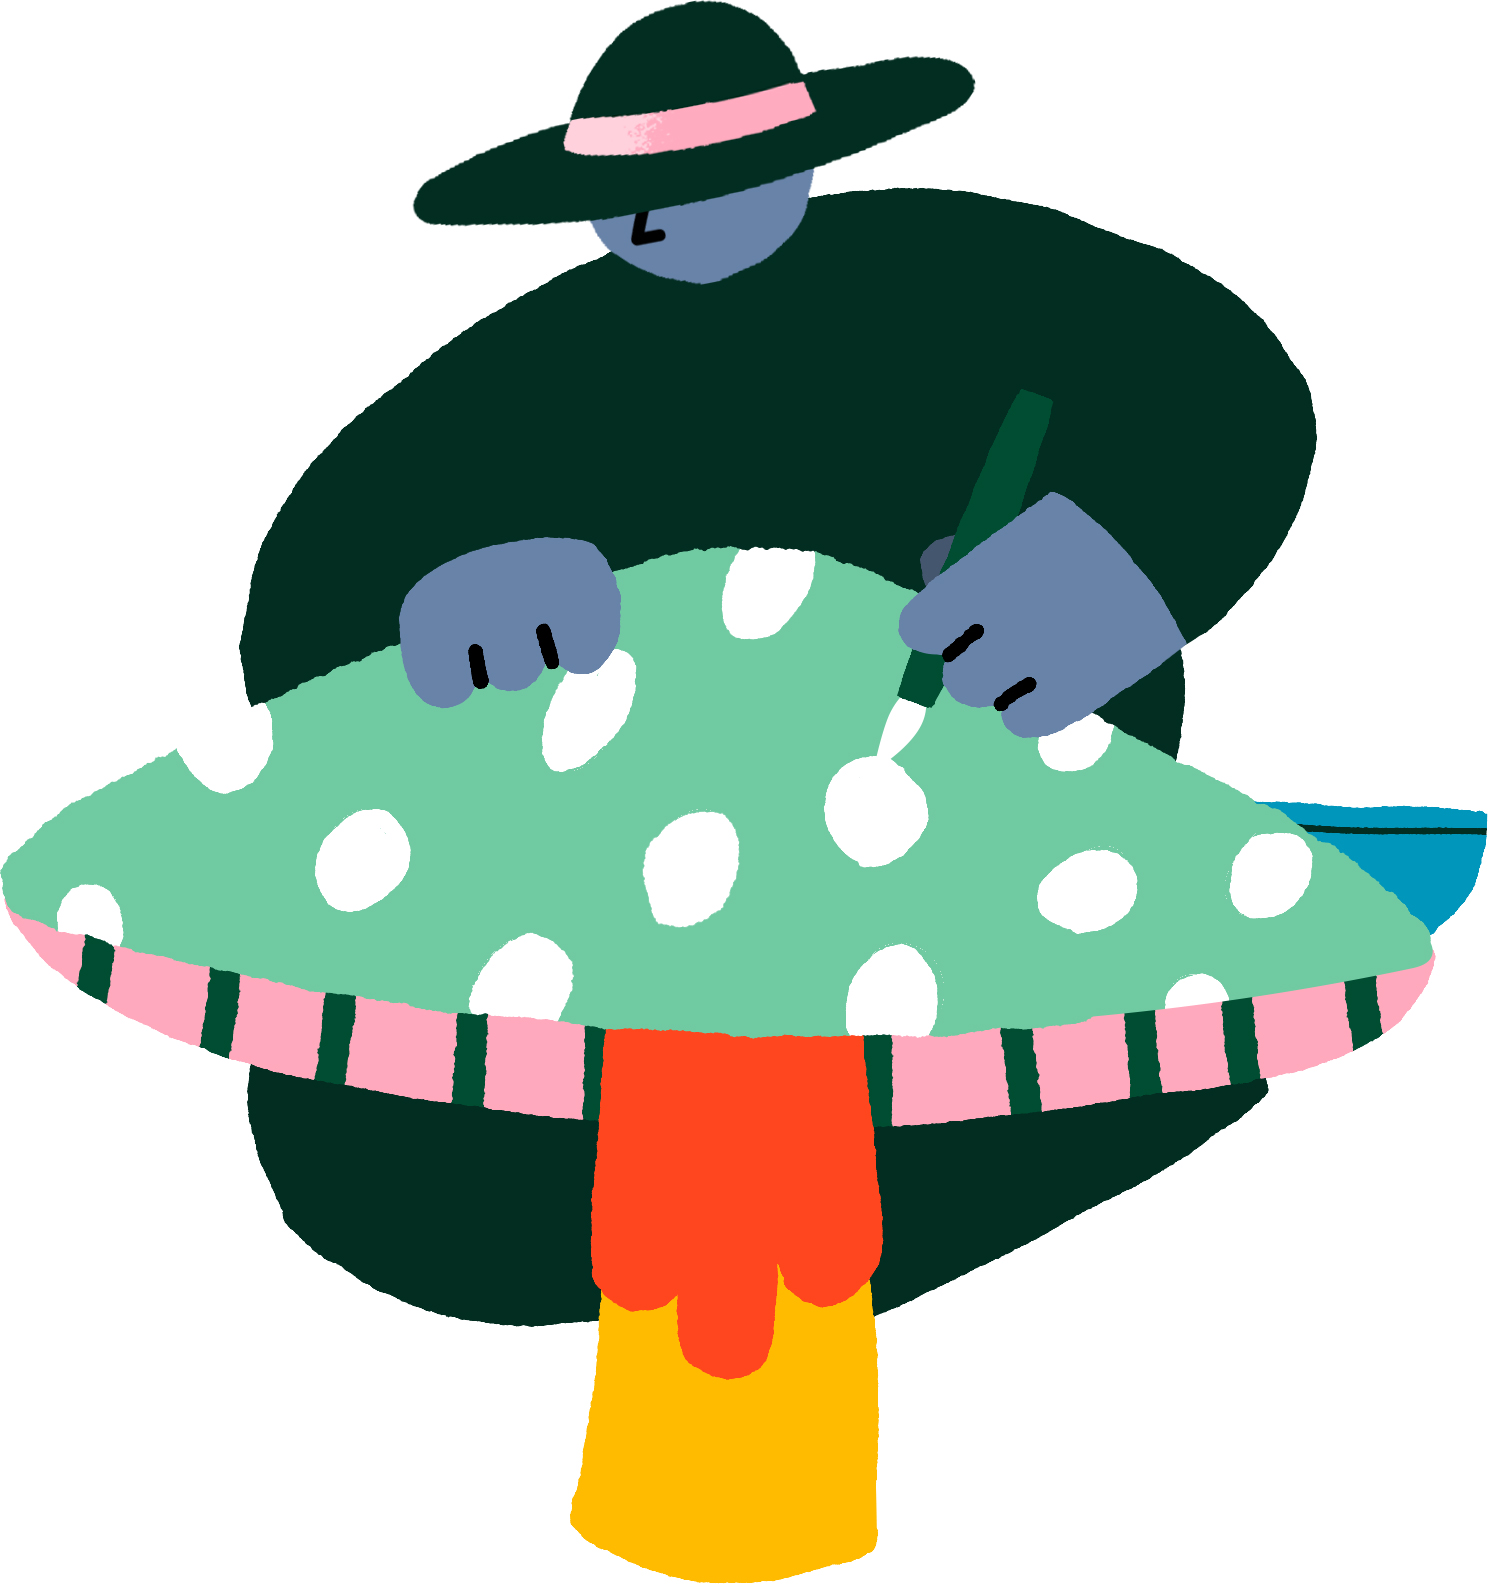 painting a mushroom illustration